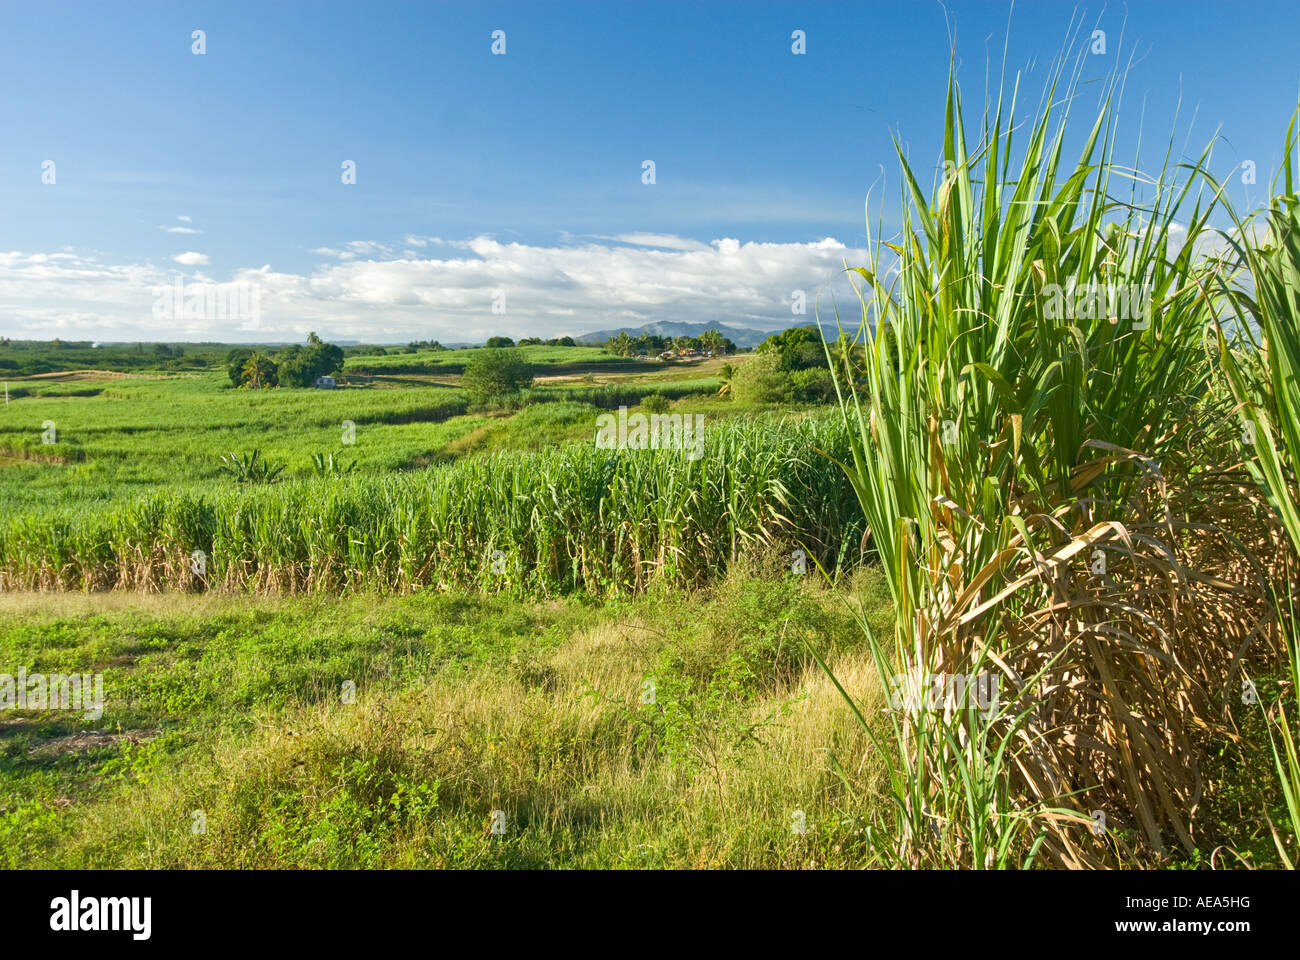 Zuckerrohr Zuckerrohr Felder Plantagenwirtschaft Fidschi-Inseln Southsea Meer Südpazifik landen Bauernhof Bauer Wolken Stockfoto